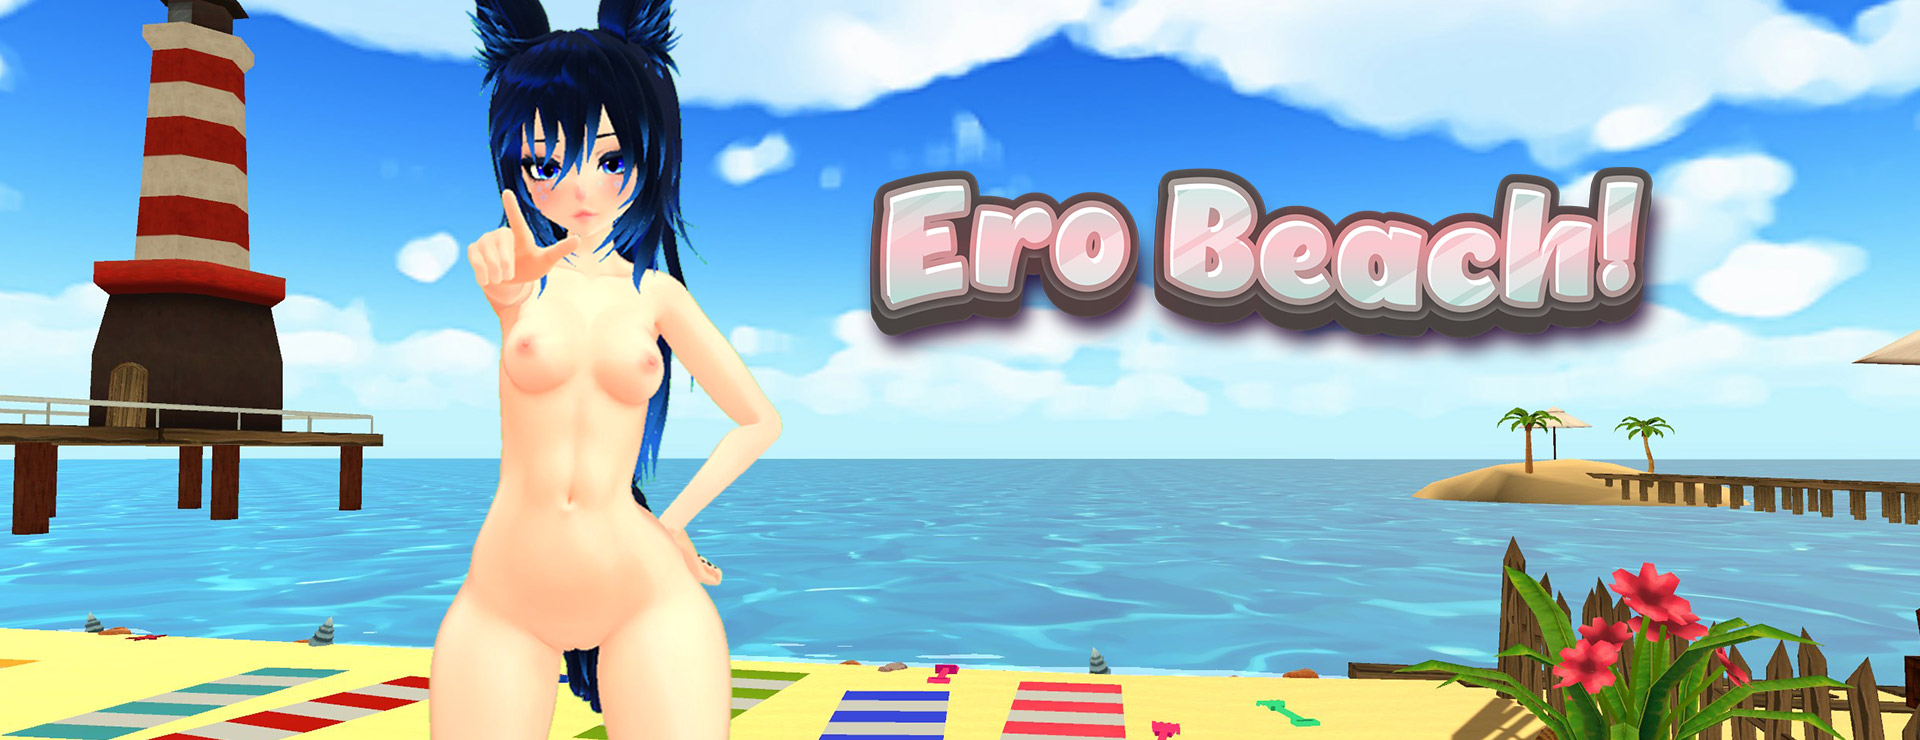 Ero Beach! - Simulation Spiel